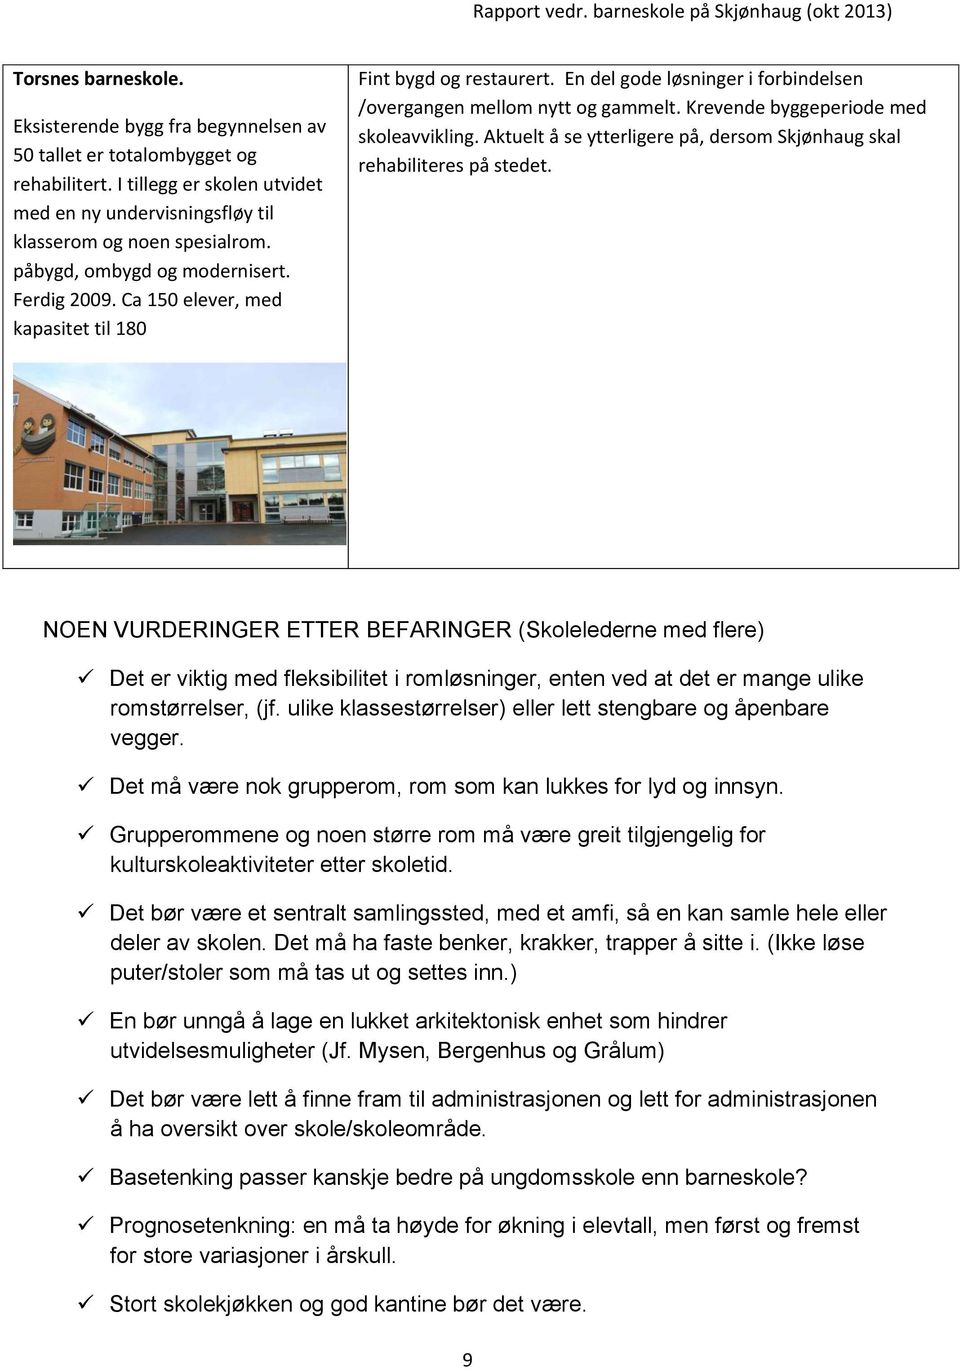 Krevende byggeperiode med skoleavvikling. Aktuelt å se ytterligere på, dersom Skjønhaug skal rehabiliteres på stedet.